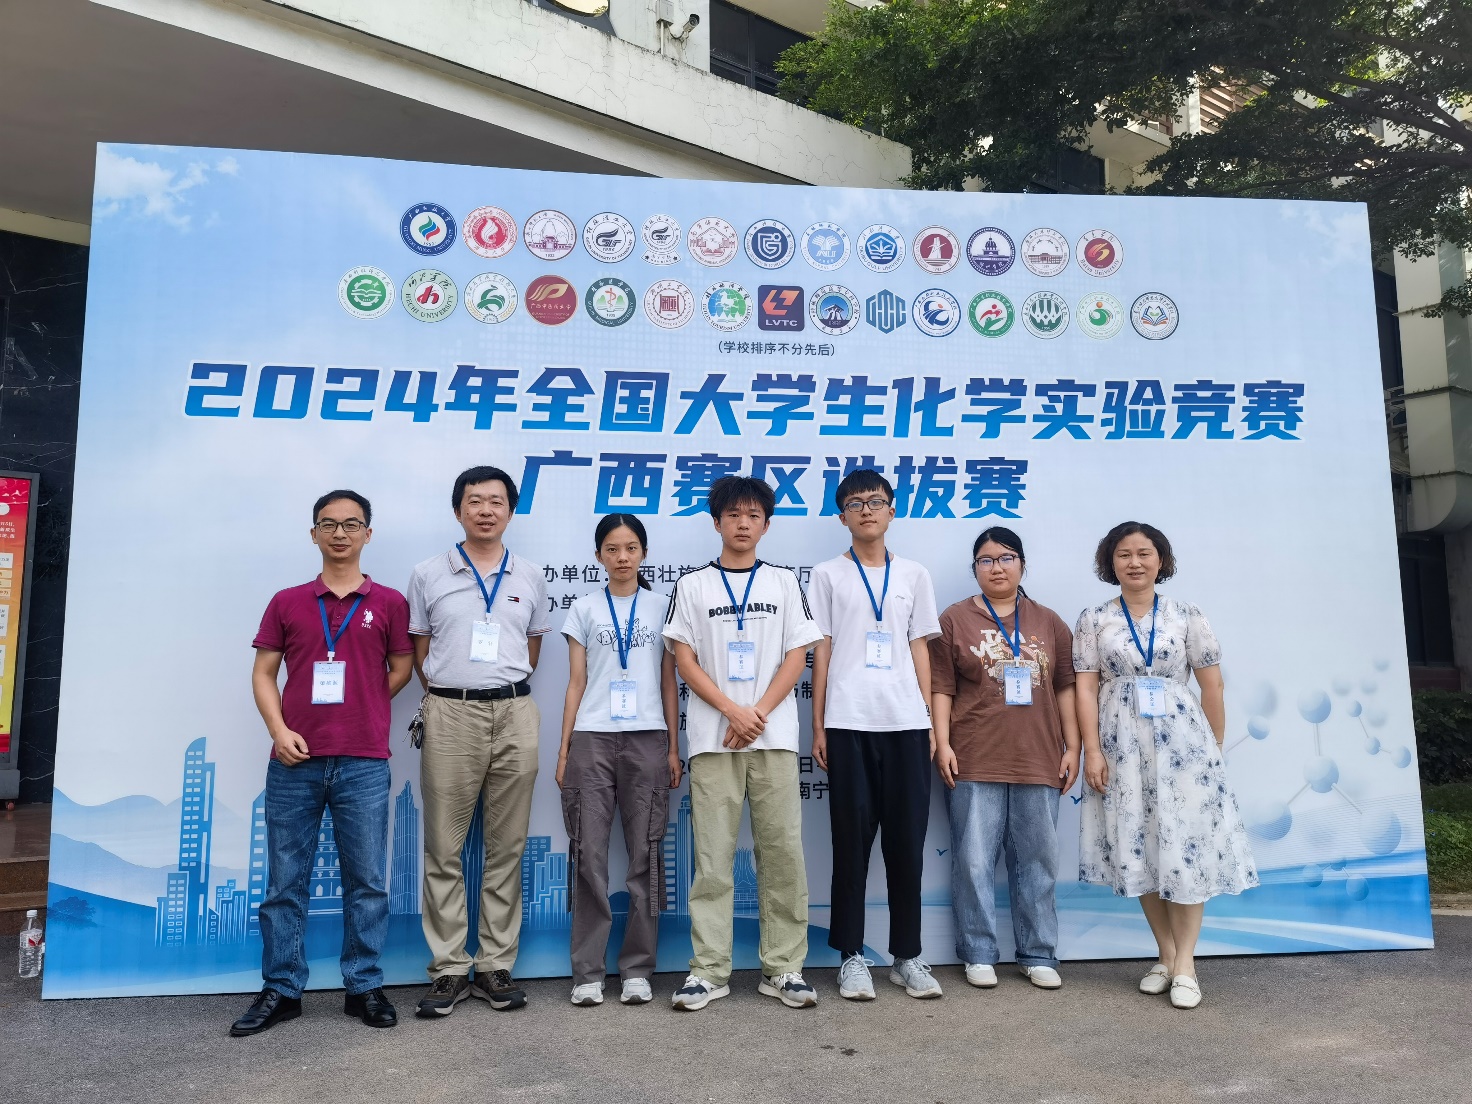 beat365体育亚洲官方网站学生在2024 年全国大学生化学实验竞赛广西赛区选拔赛中荣获一等奖